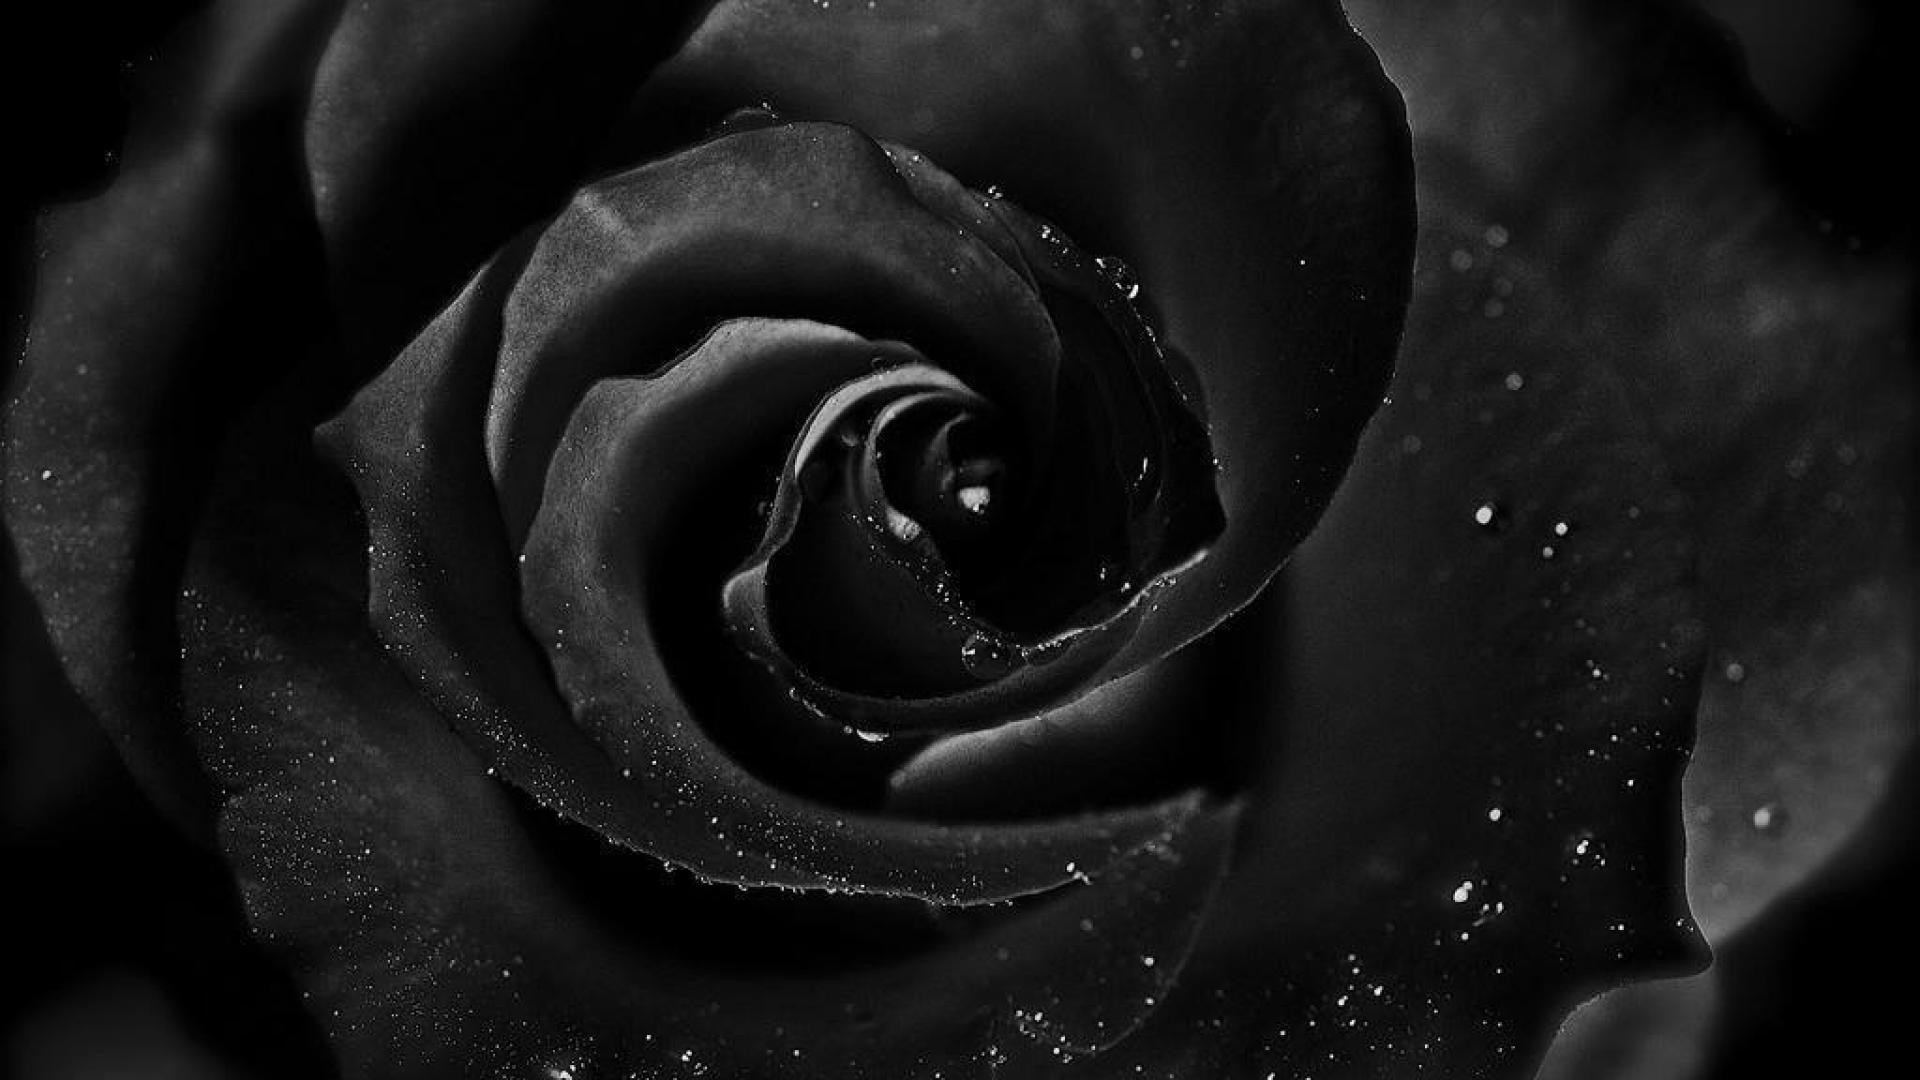 black rose background